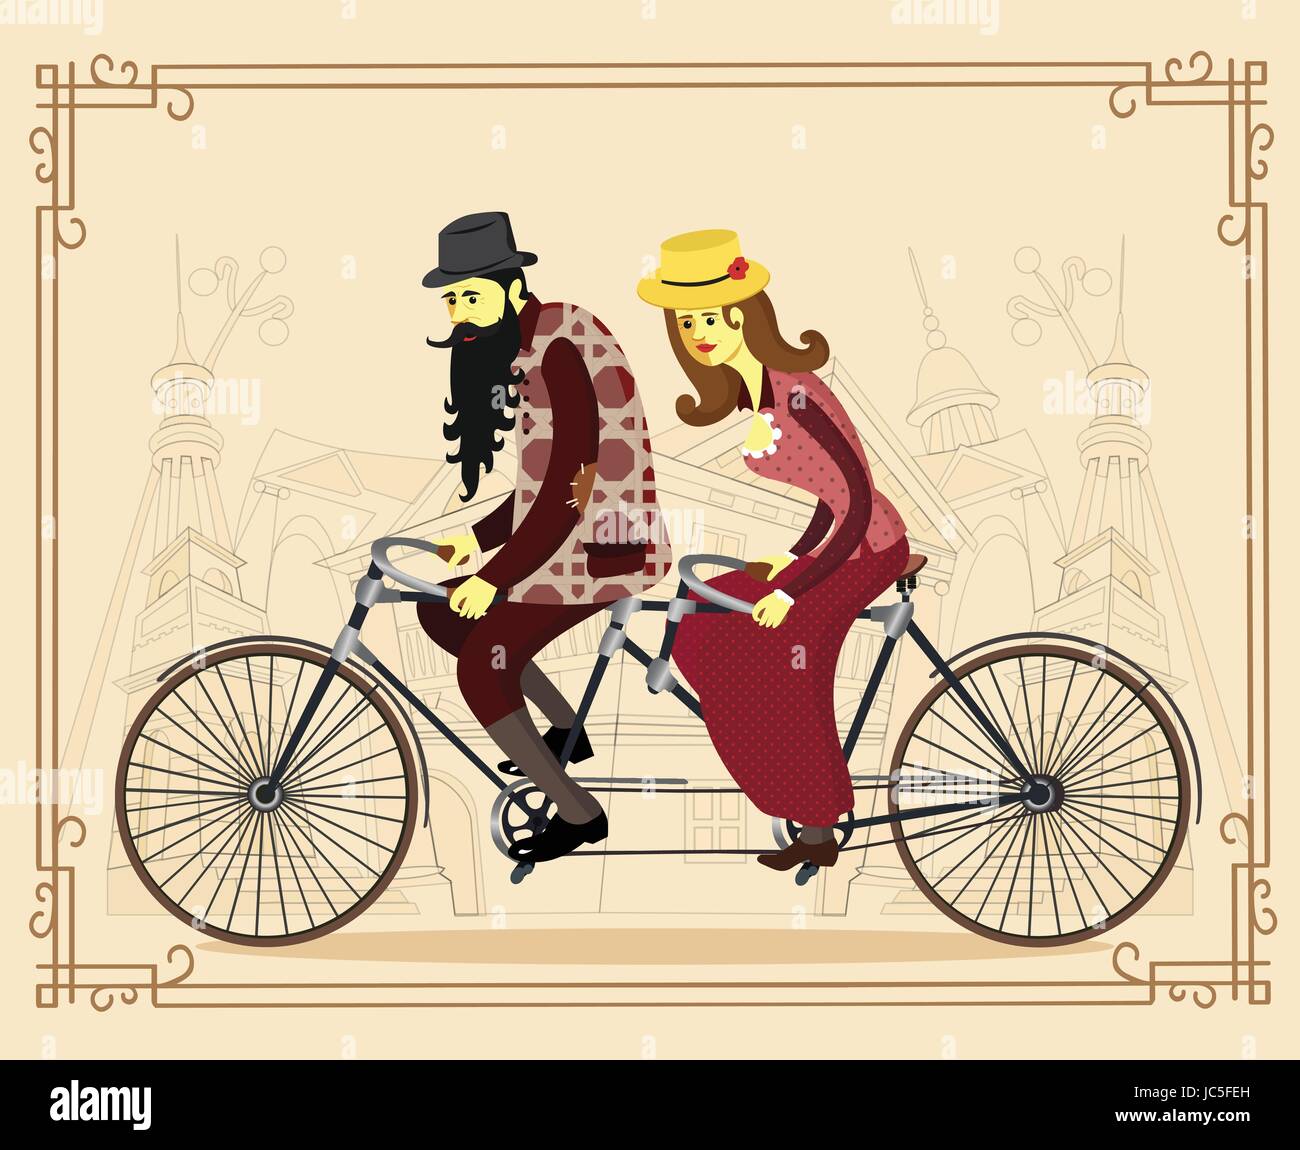 Vektor-Wohnung glücklich reifer Mann und Frau mit alten Retro-Tandem Fahrrad. Liebe paar. Valentinstag-Grußkarte. Vektor-Cartoon-Illustration. Stock Vektor